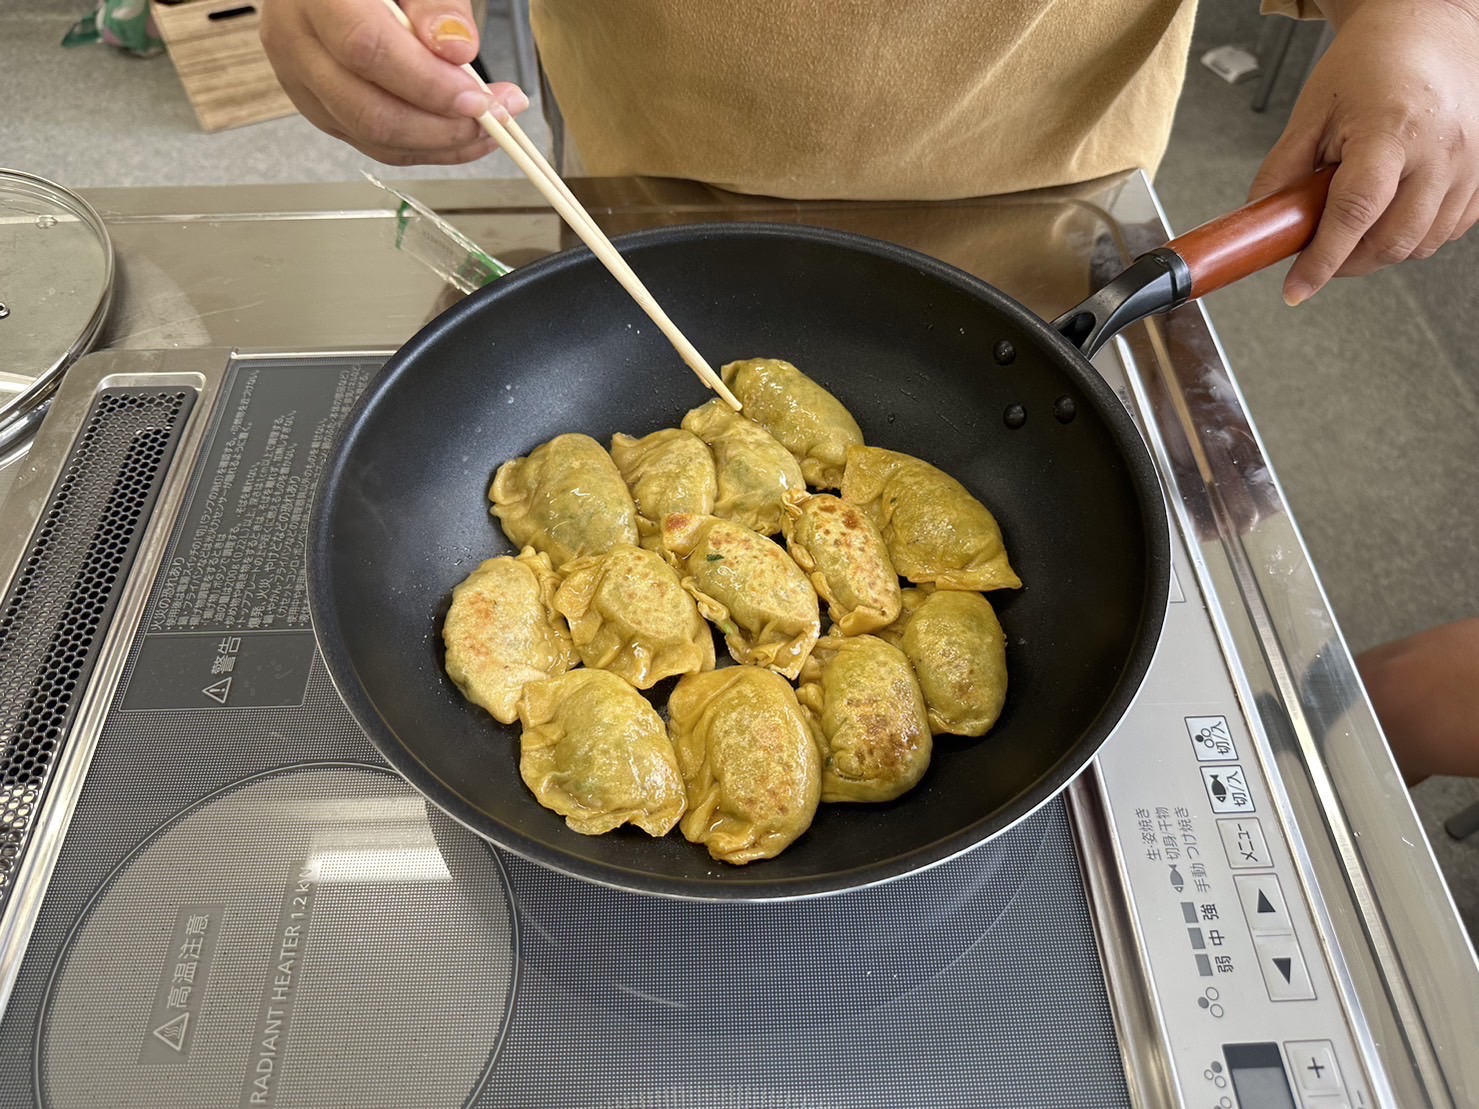 【さし草屋】沖縄の彩り食材を使ったカラフルさし草ギョーザ